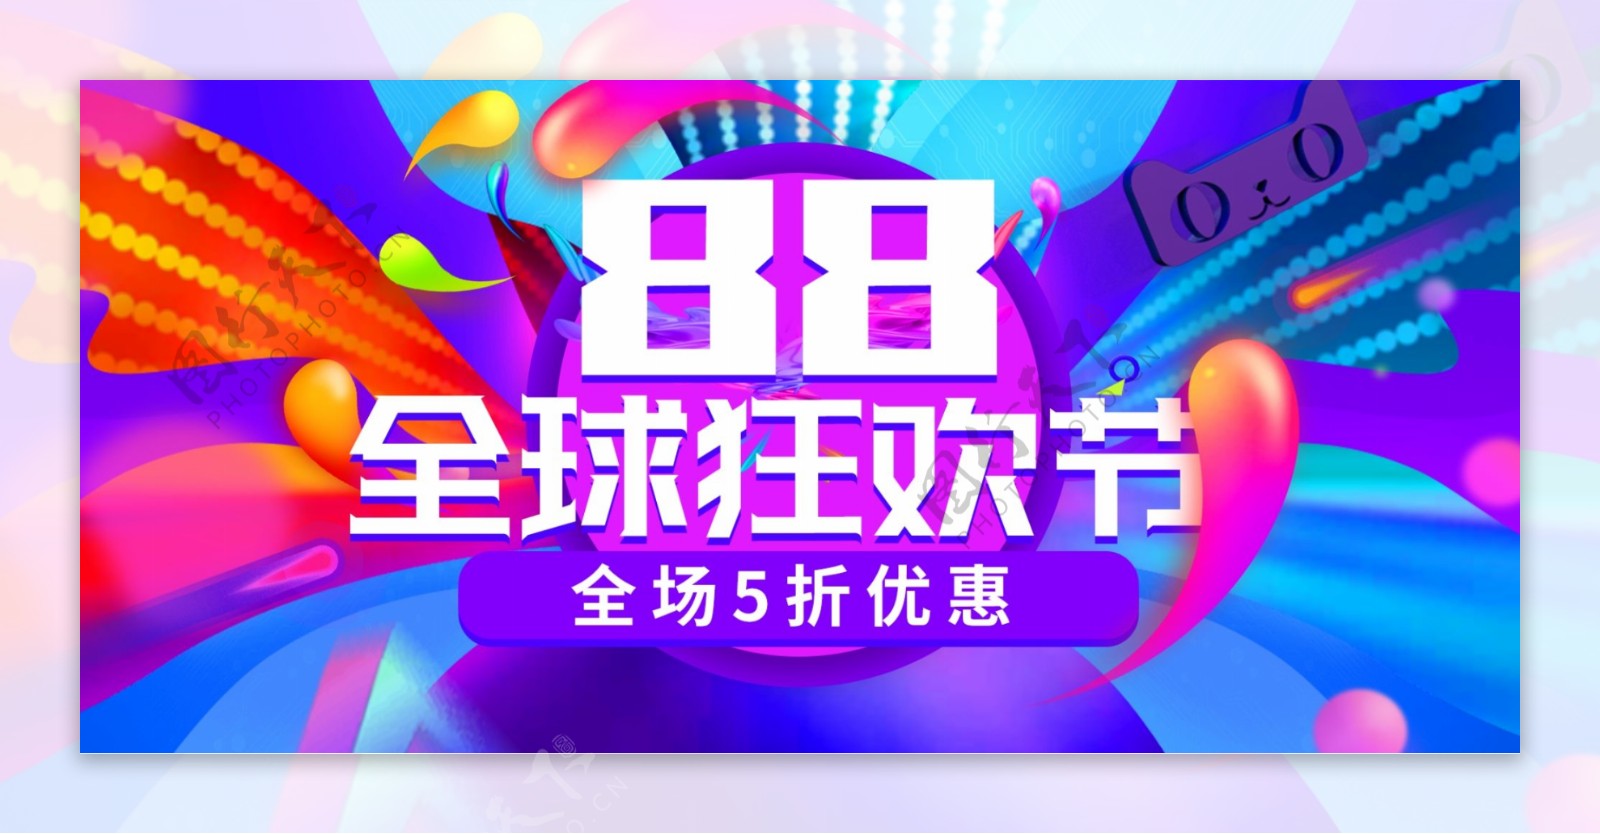 欧普风紫色炫酷潮流88全球狂欢节电商海报